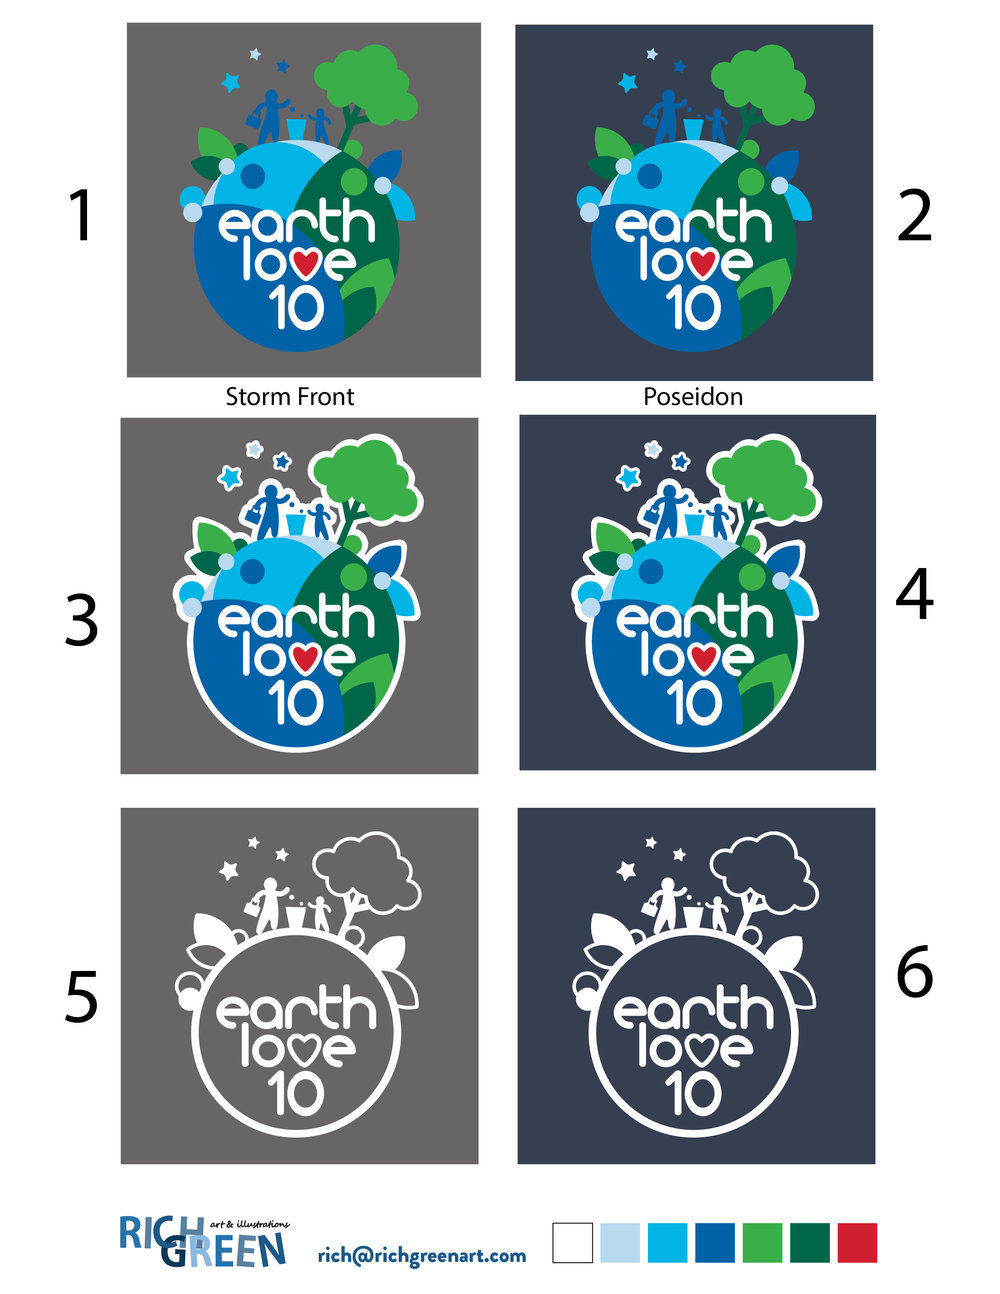 Earth Love 10 Concepts v02 02_Color Mockups.jpg